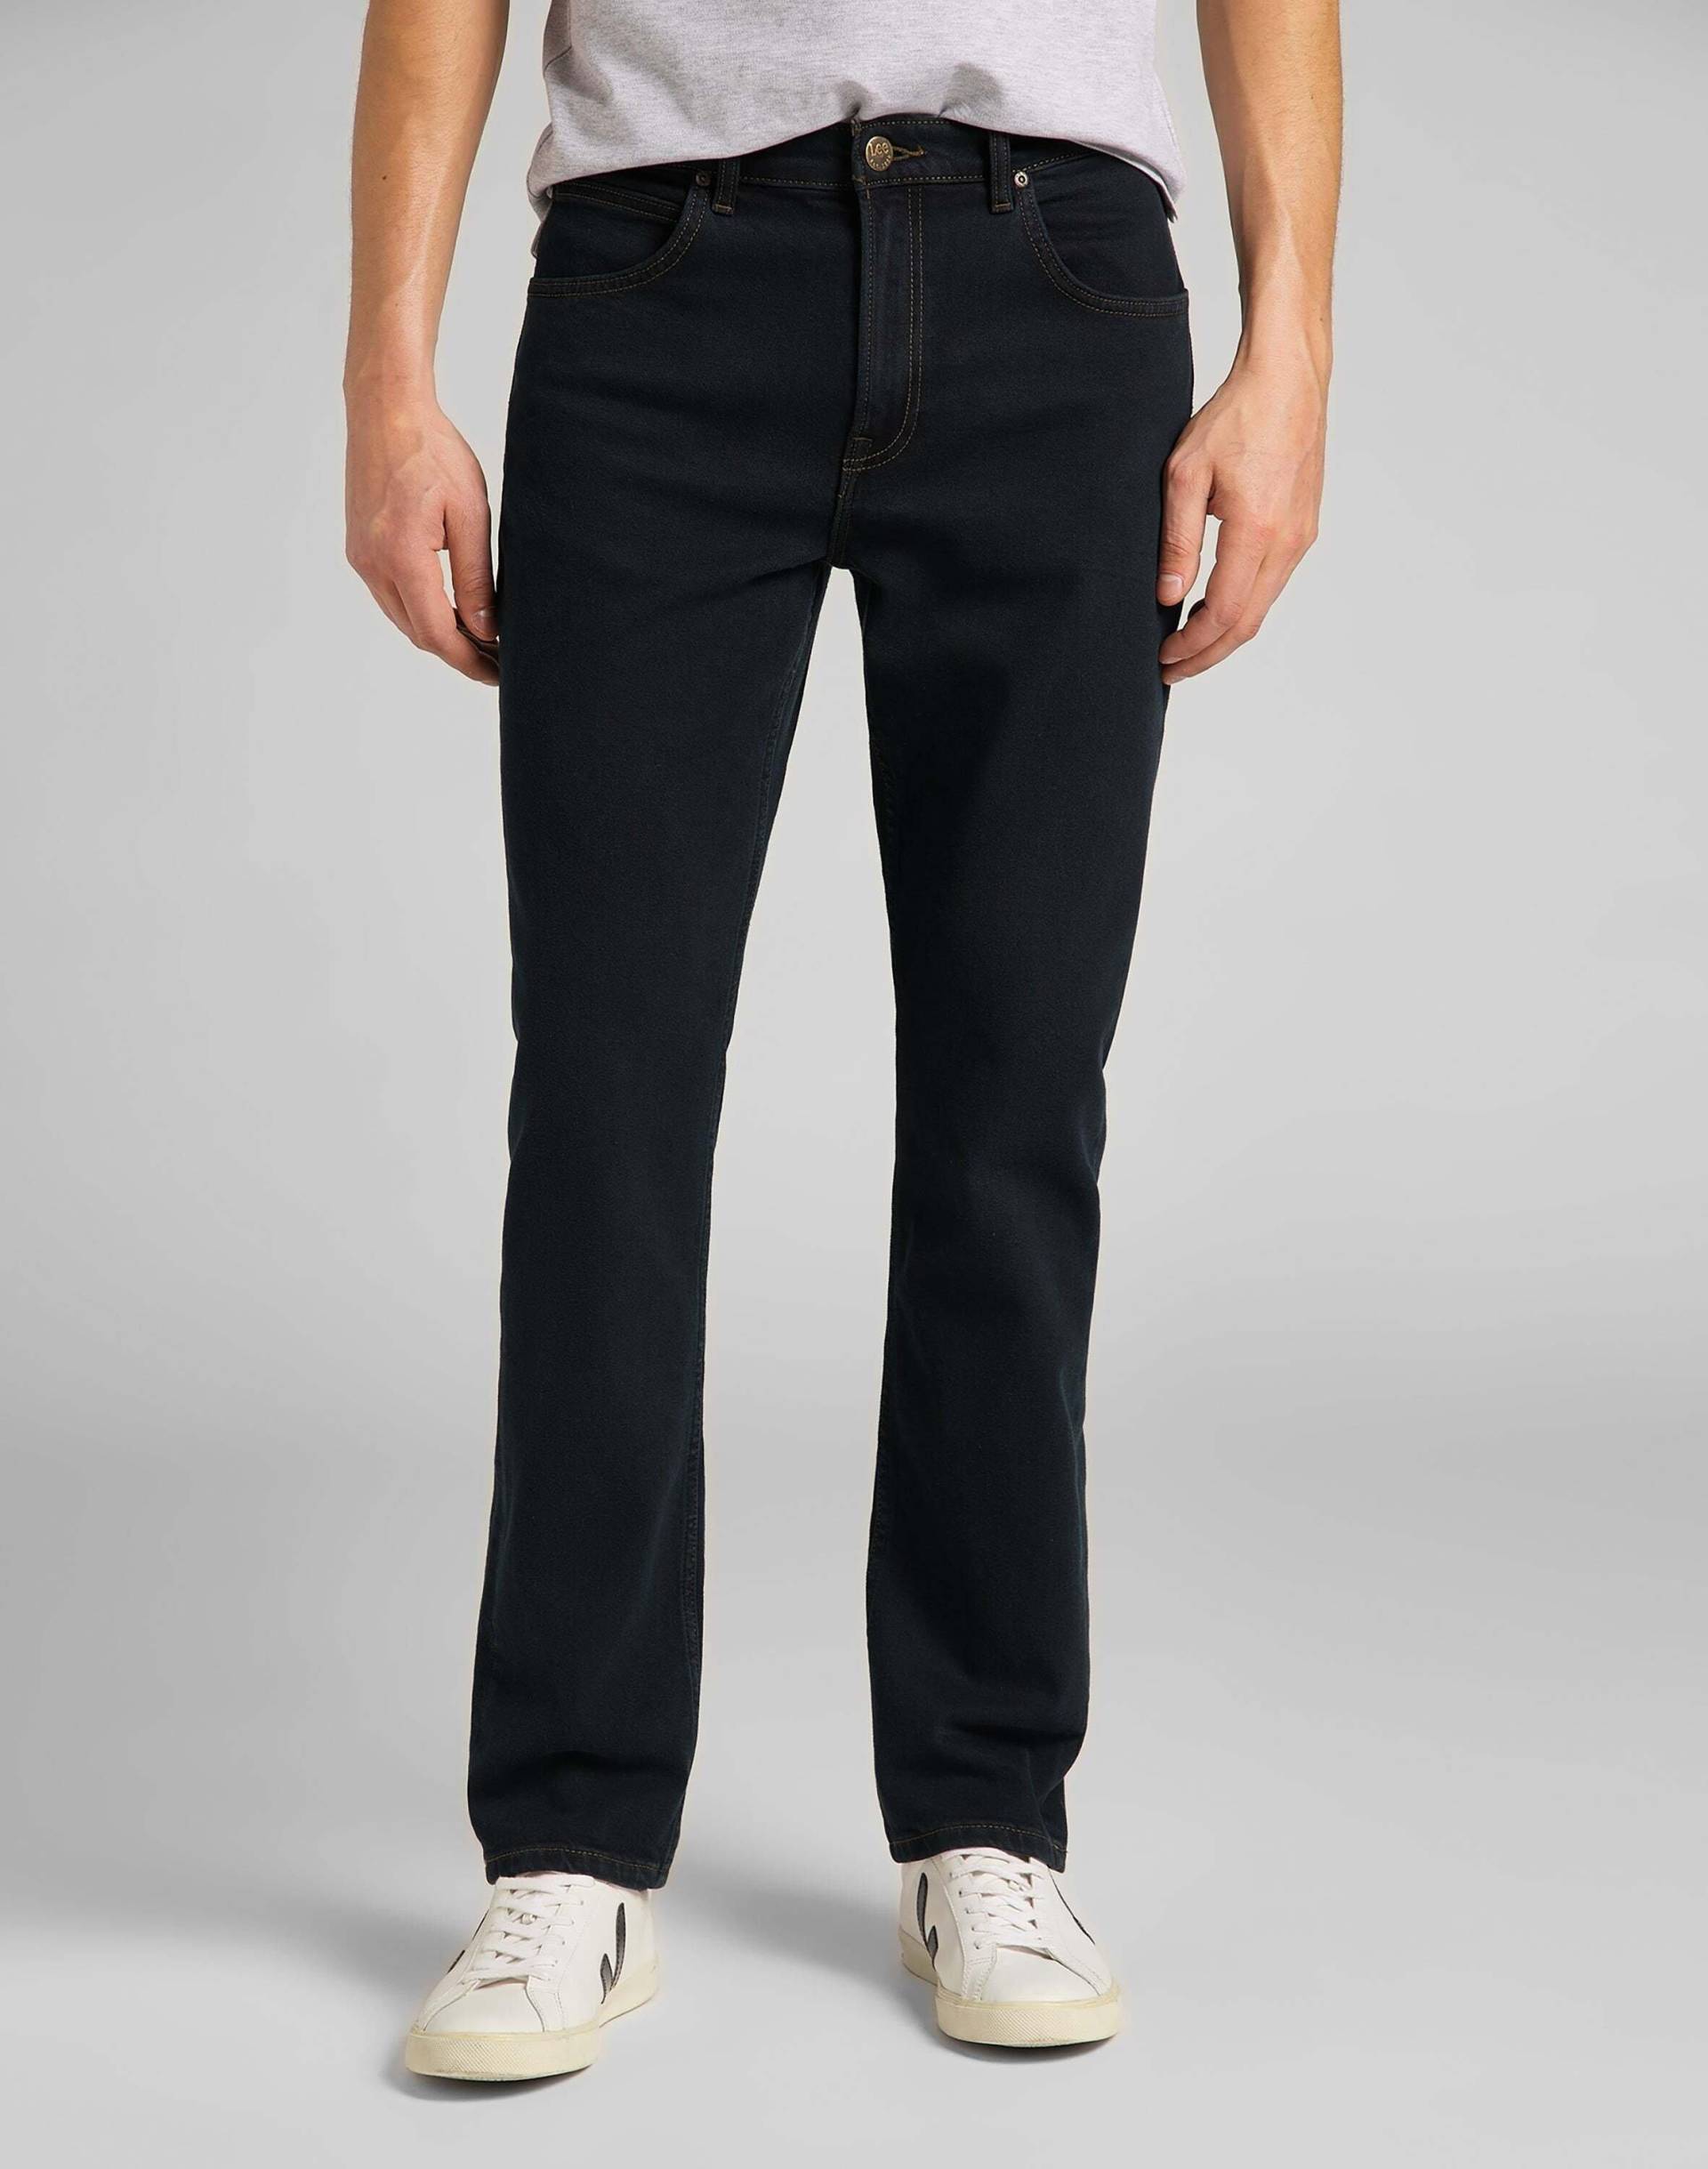 Jeans Straight Leg Brooklyn Herren Blau Denim L34/W32 von Lee